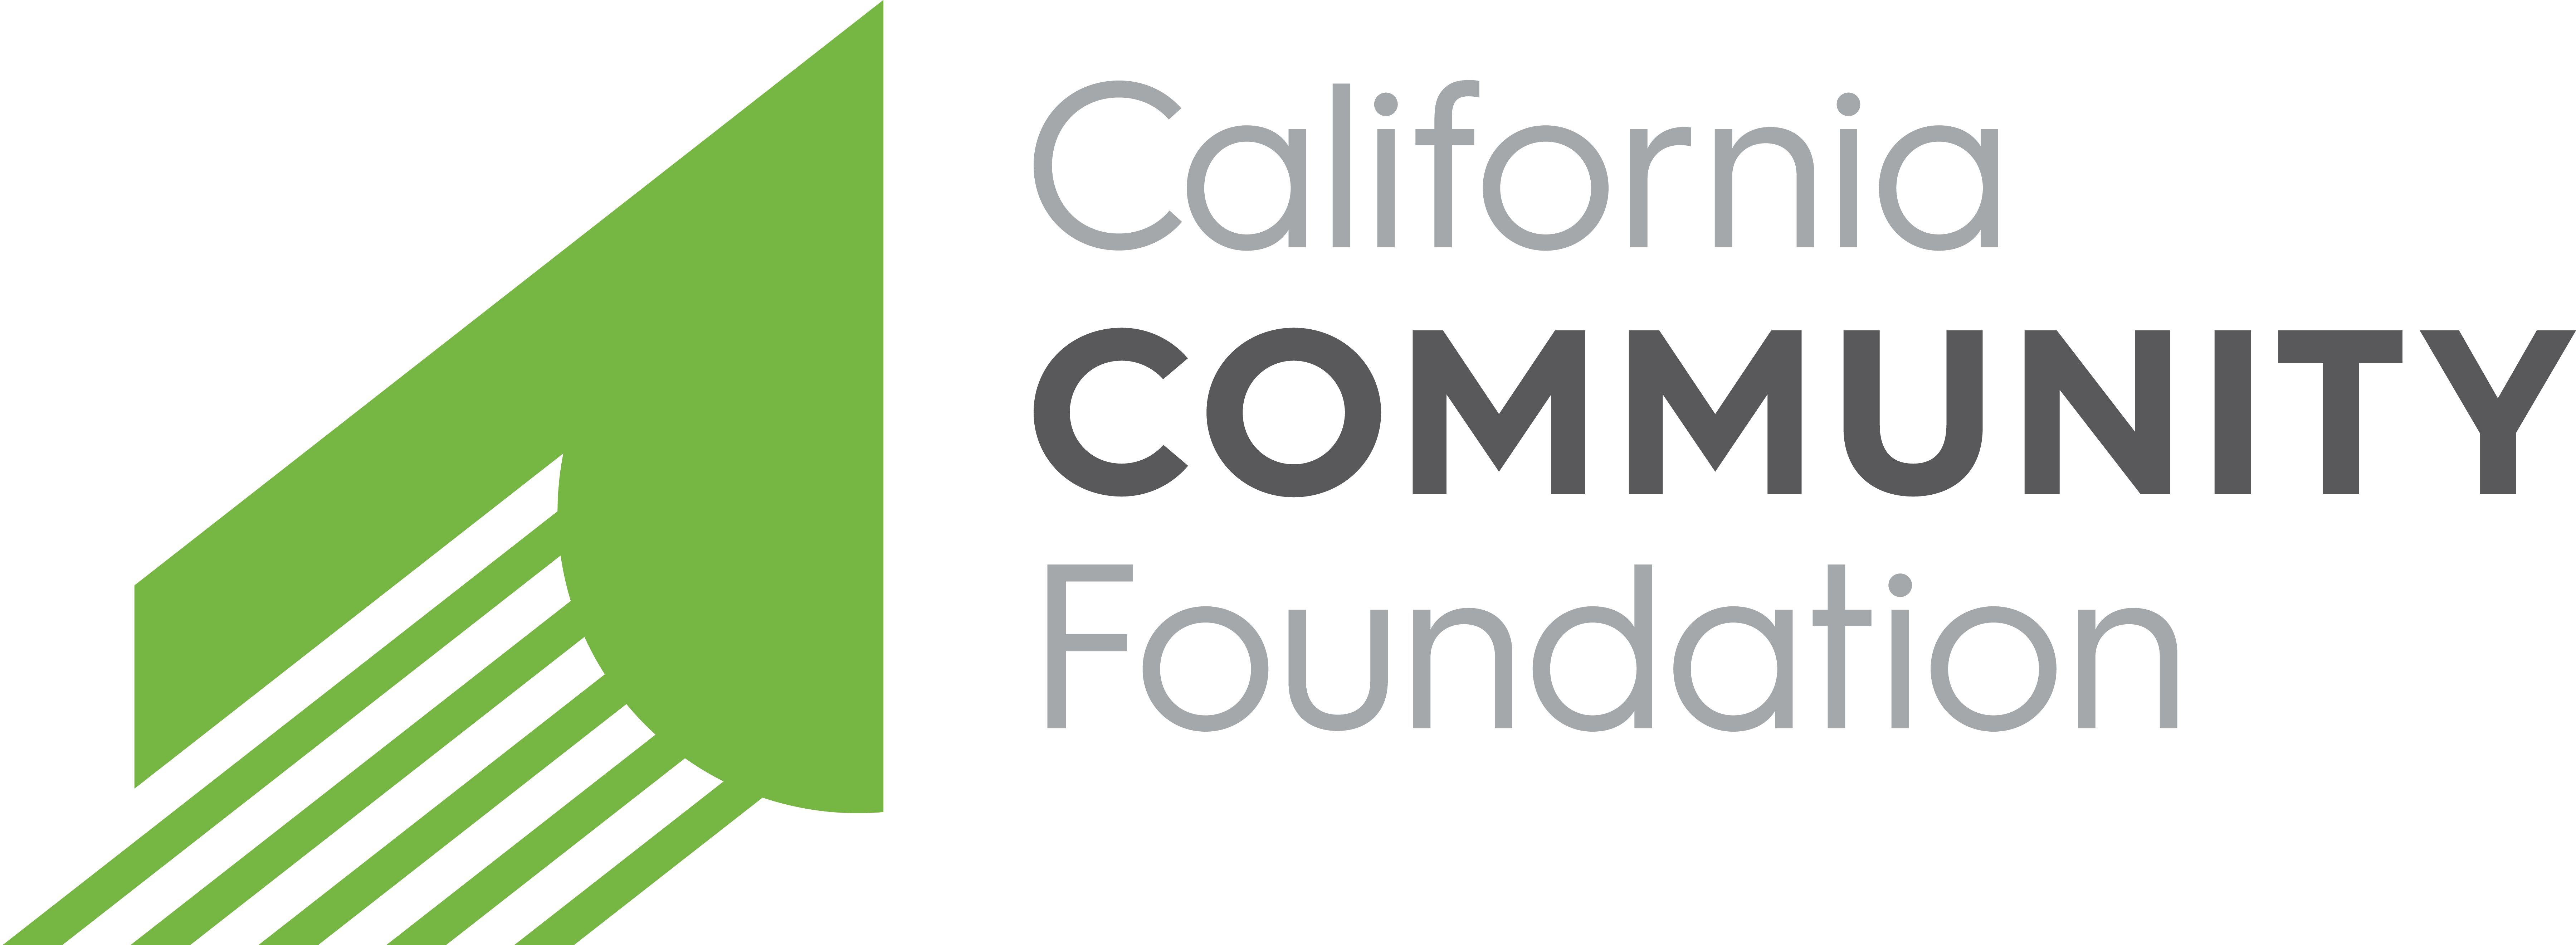 California Community Foundatio